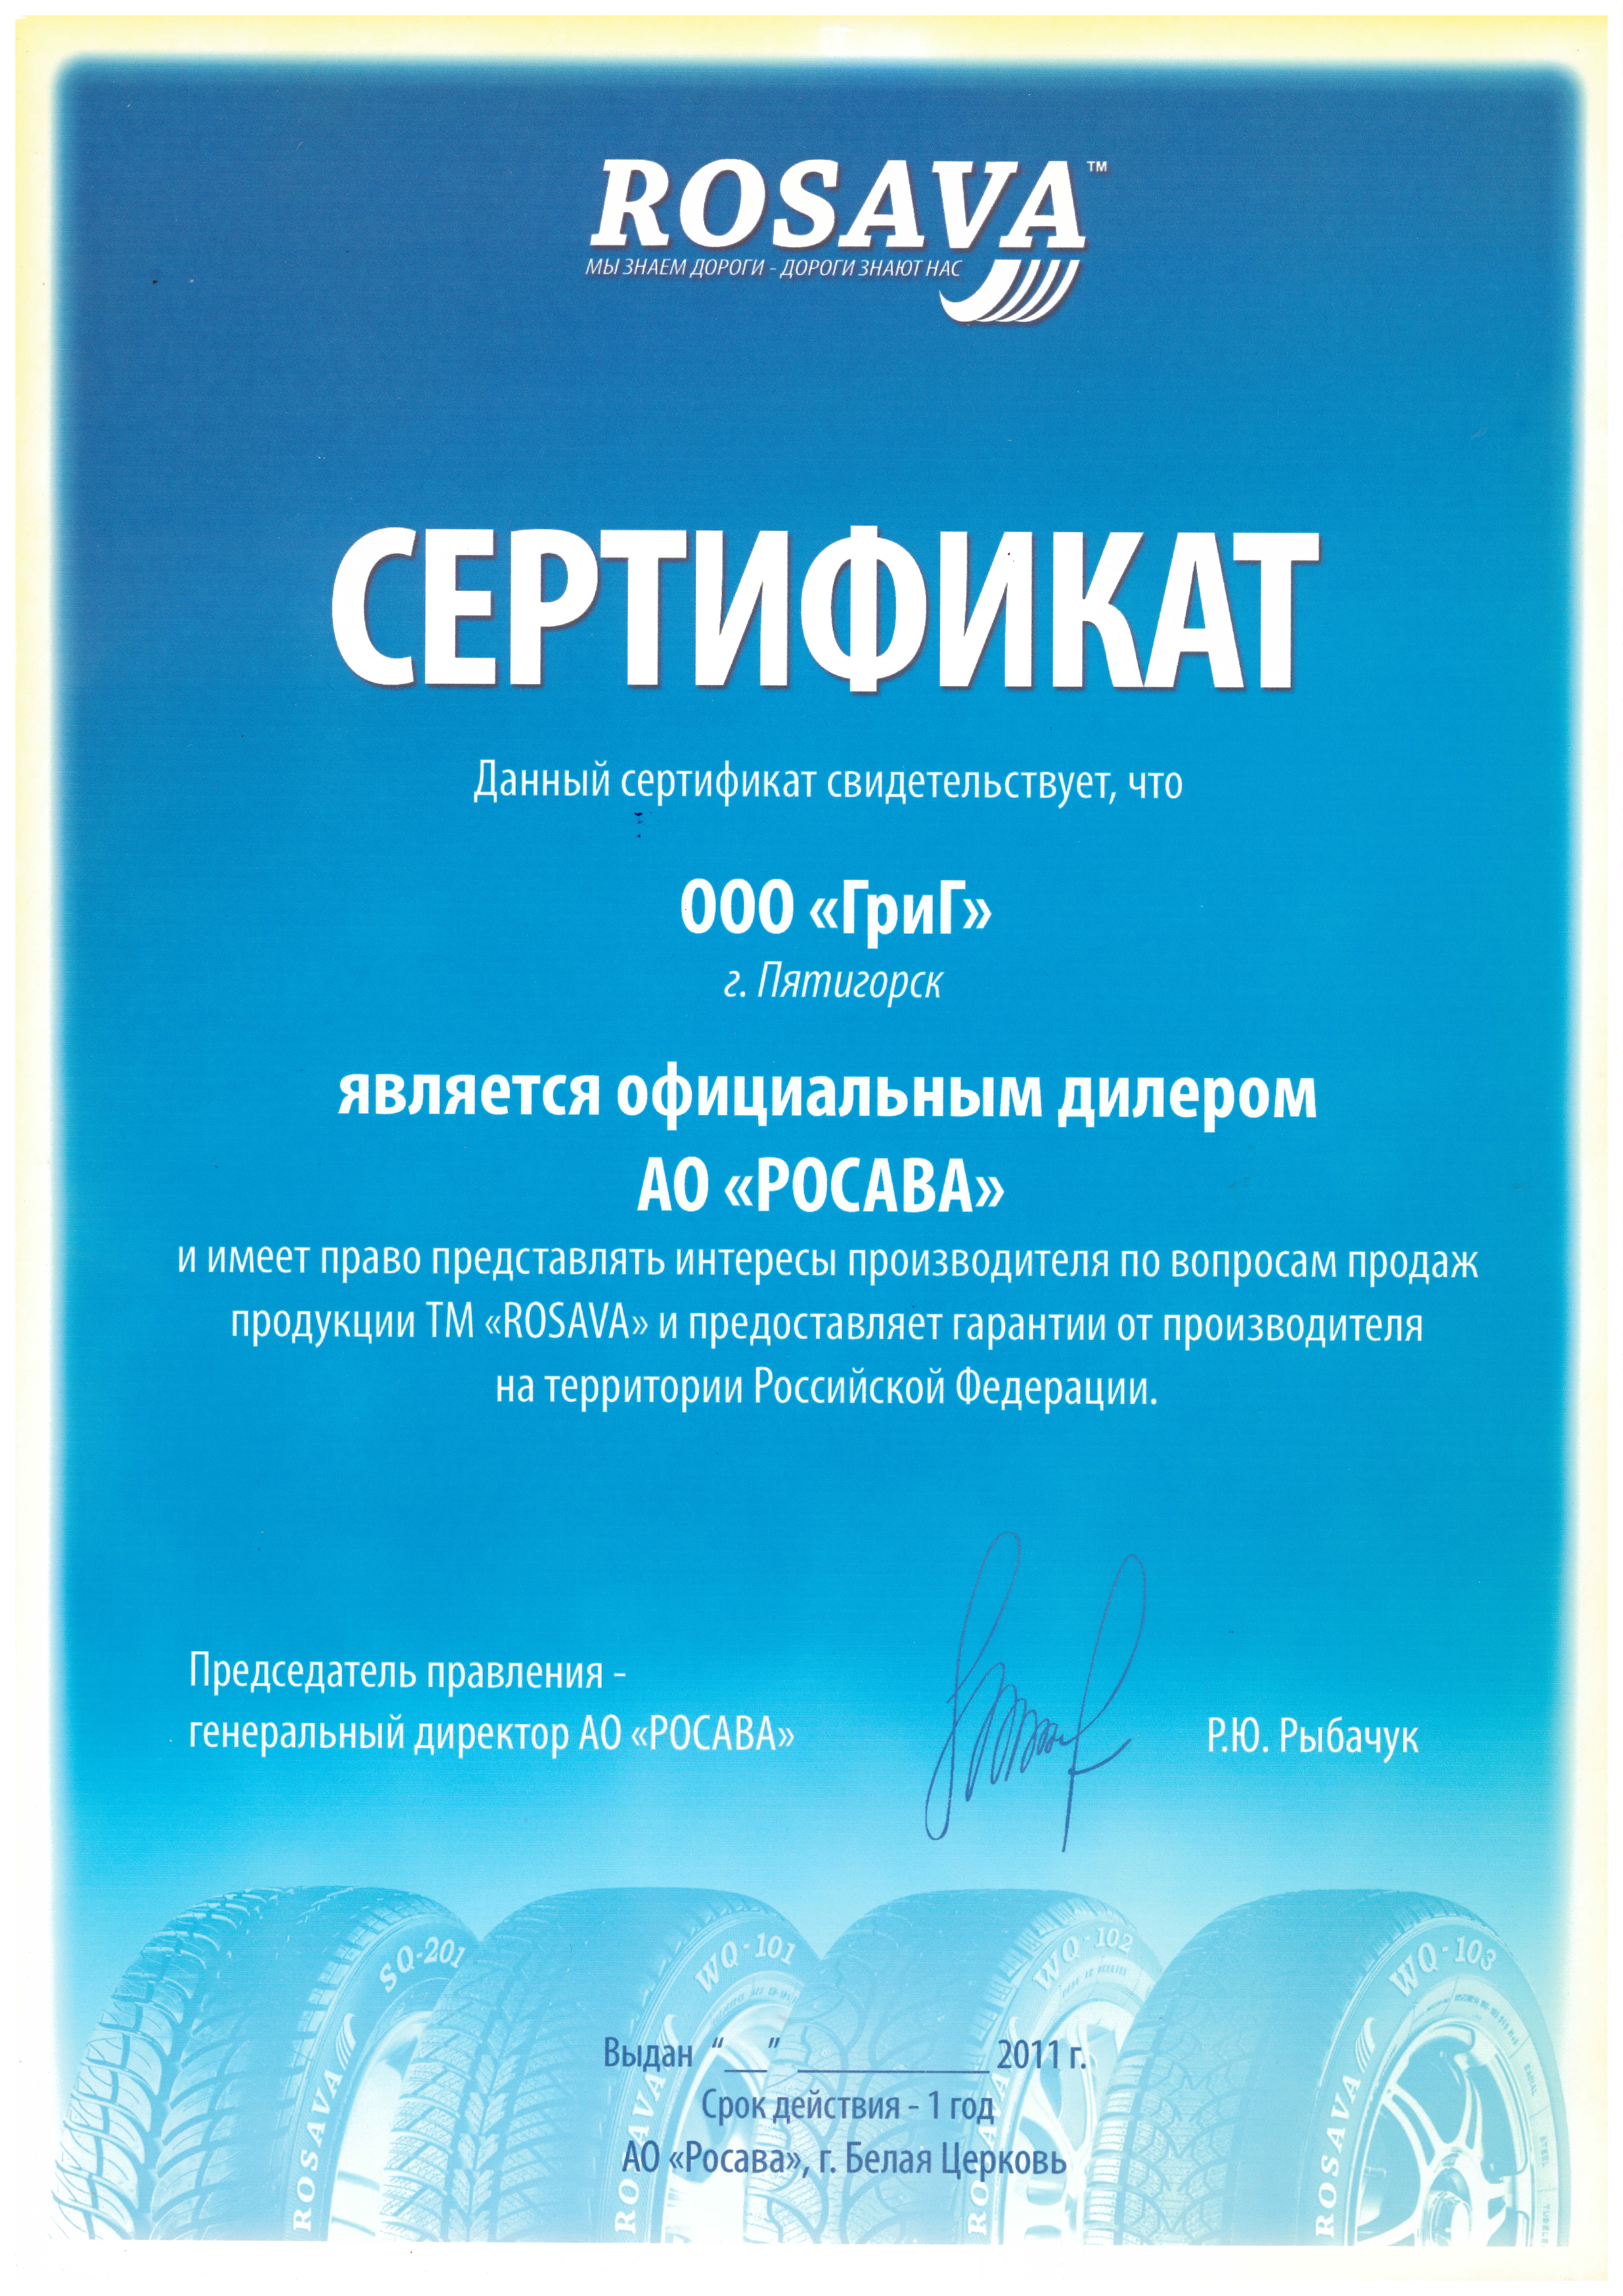 Официальный дилер АО "Росава" 2011